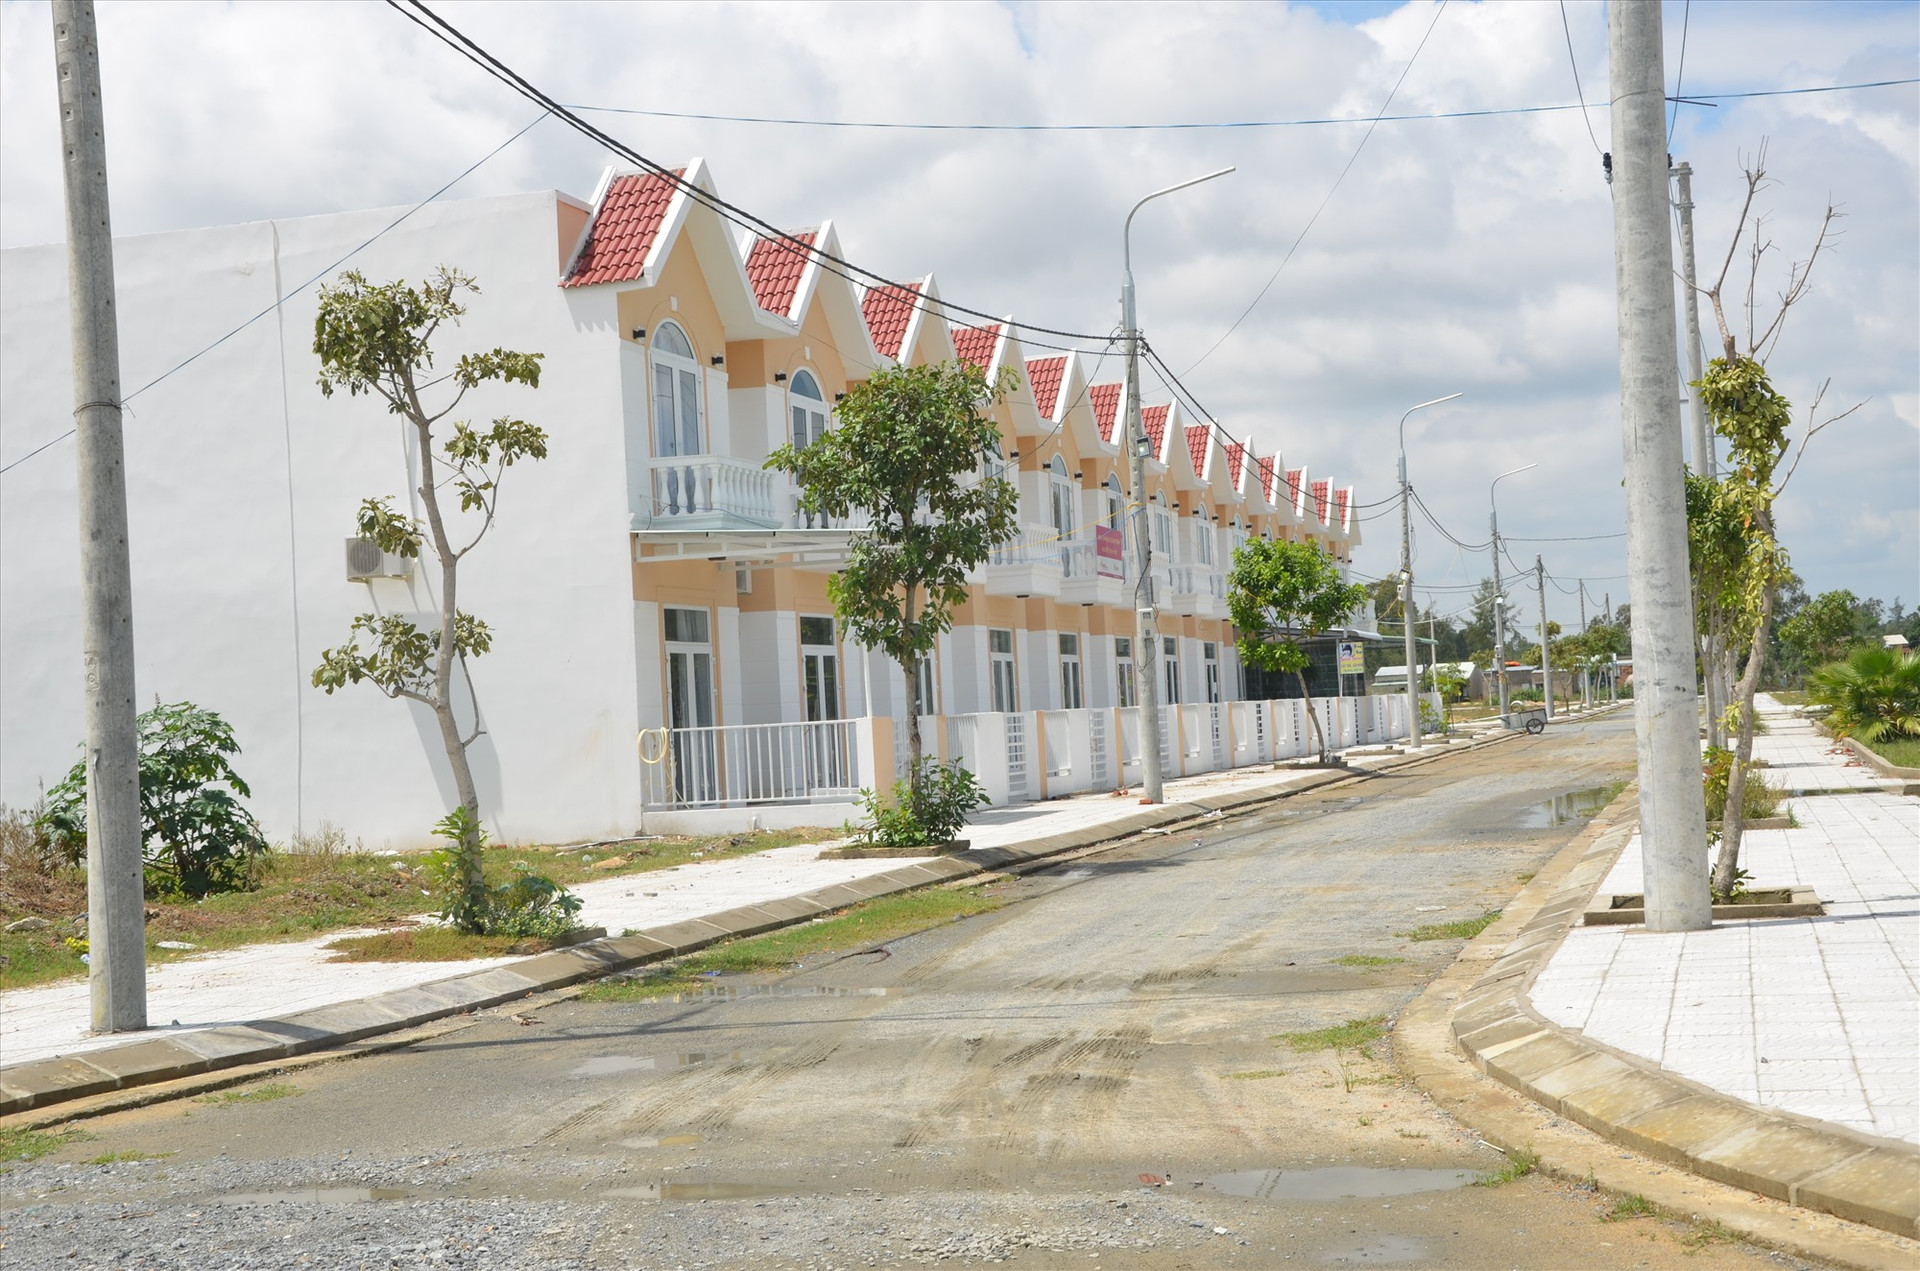 Đô thị mới Điện Nam - Điện Ngọc đang dần lấp đầy diện tích quy hoạch phát triển không gian đô thị, bất động sản. Ảnh: T.H